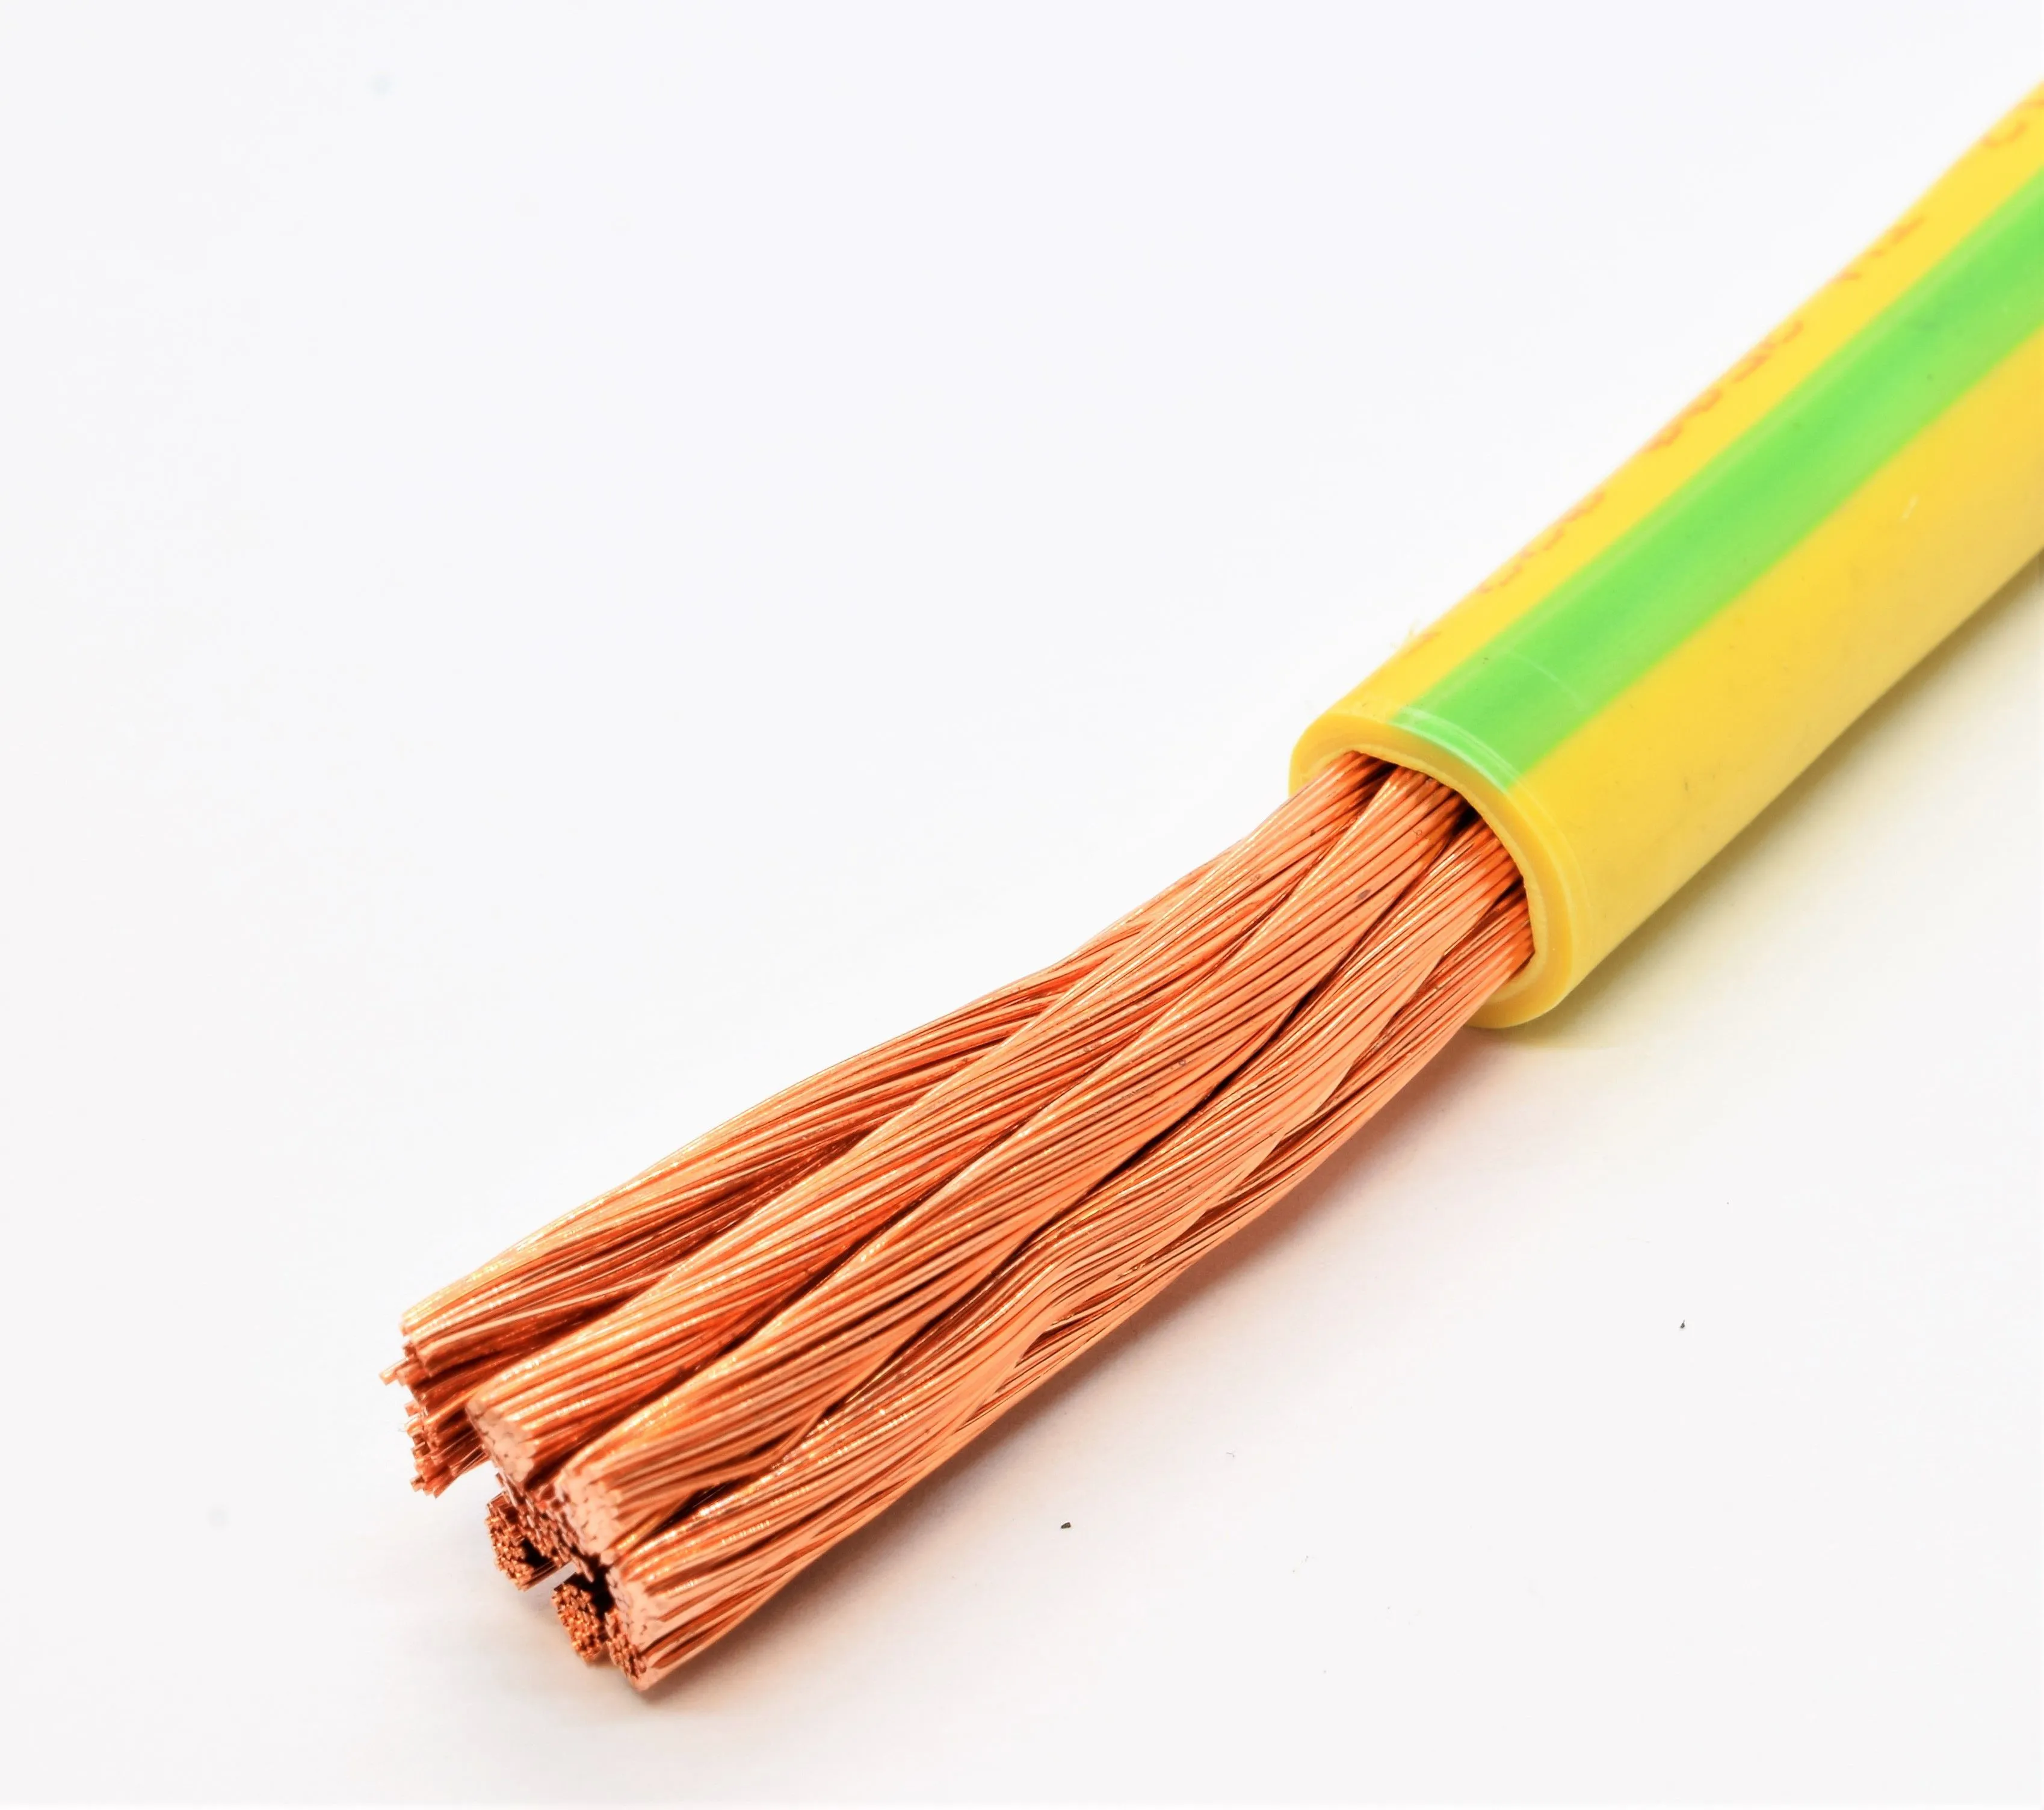 Сечения провода пугв. ПУГВ 1х1.5. Провод ПУГВ (цвет желто-зеленый) 1х4. Провод ПУГВ 10 мм² желто-зеленый. Провод ПУГВ 4,0 желто-зеленый медный многожильный,повышенной гибкости.